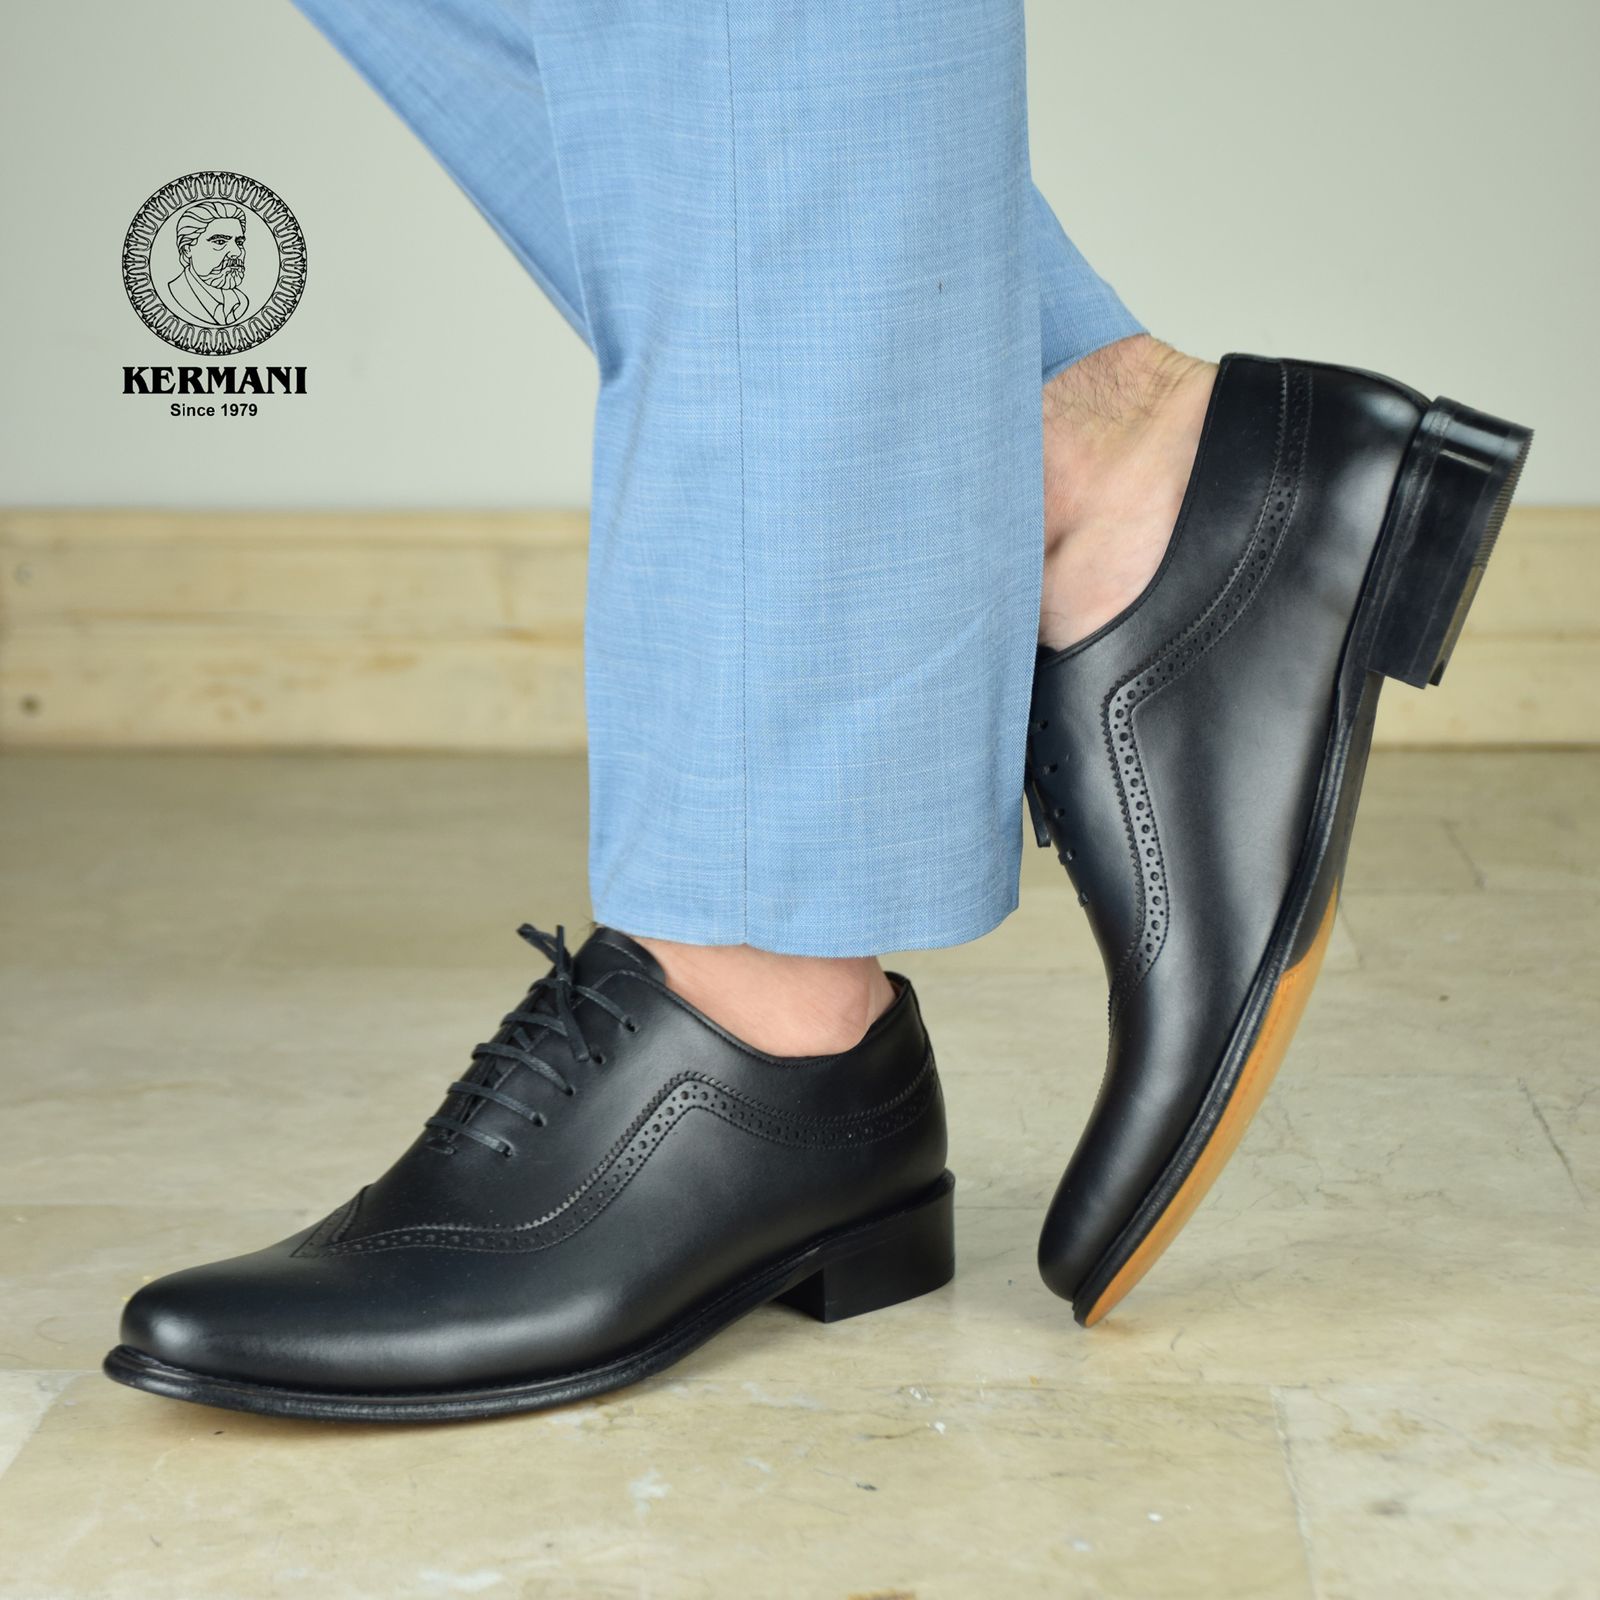 کفش مردانه کرمانی مدل تمام چرم دستدوز طبیعی کد 1072 رنگ مشکی -  - 8